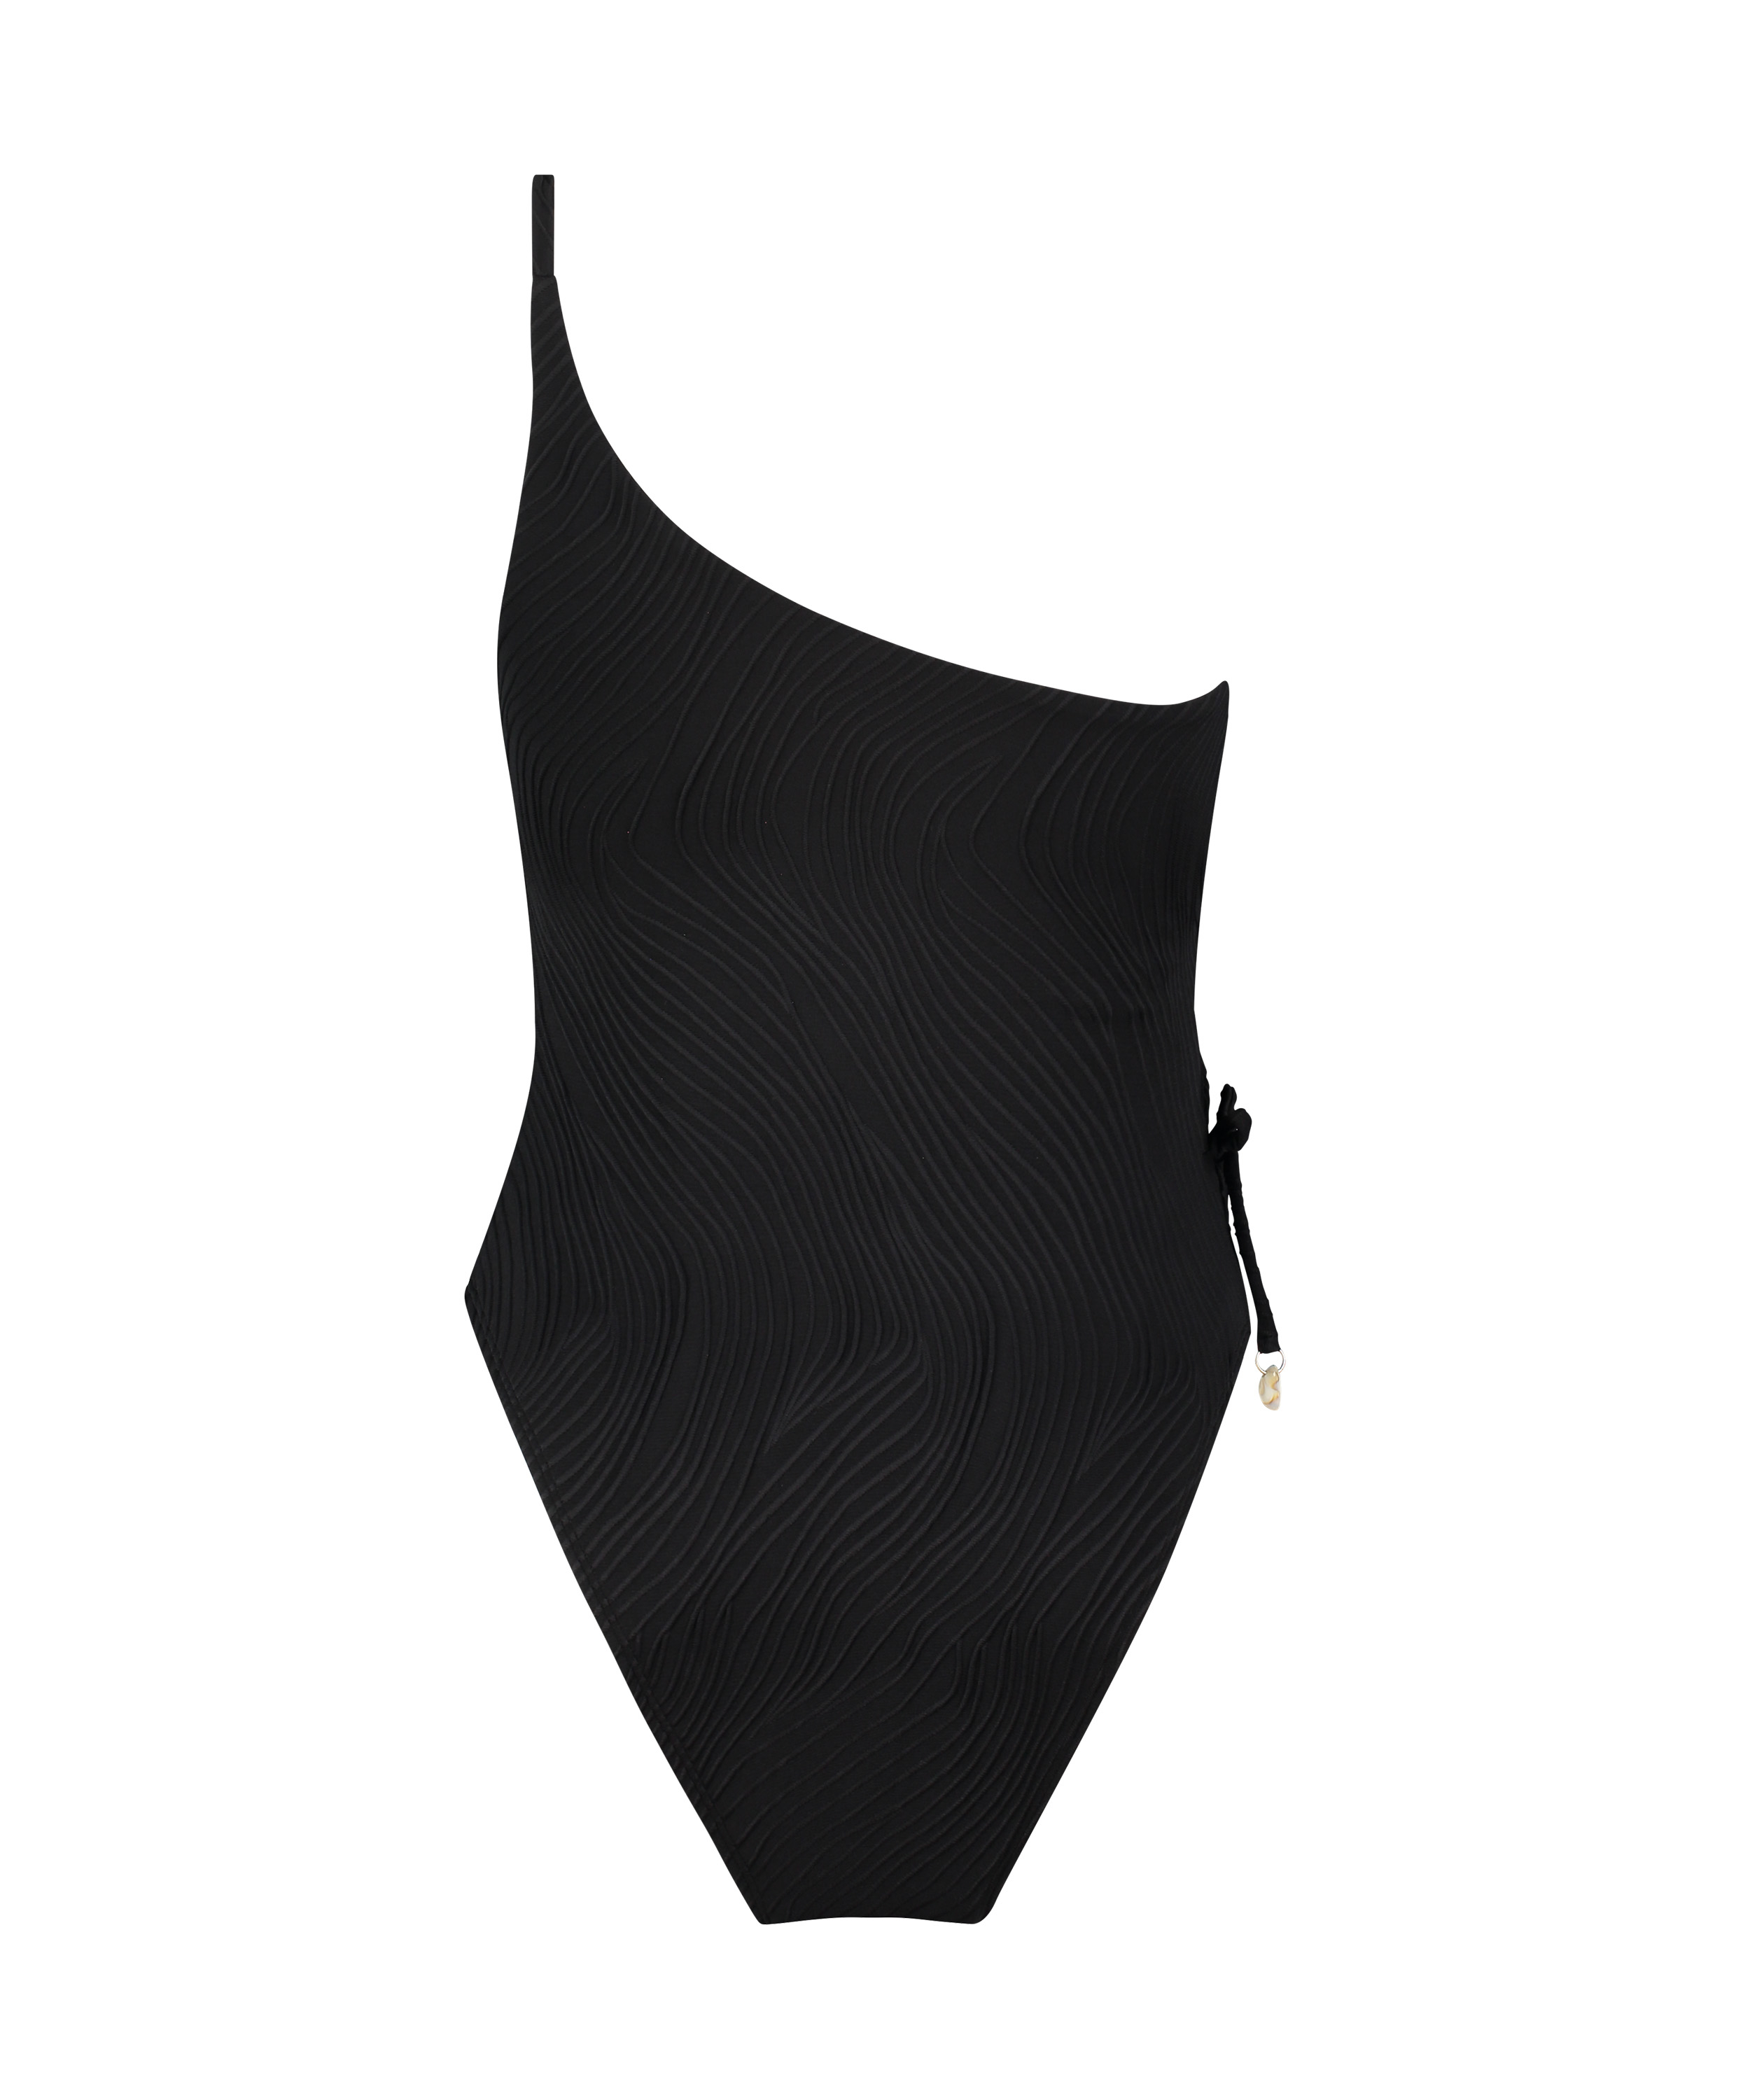 Cozumel Swimsuit, Black, main